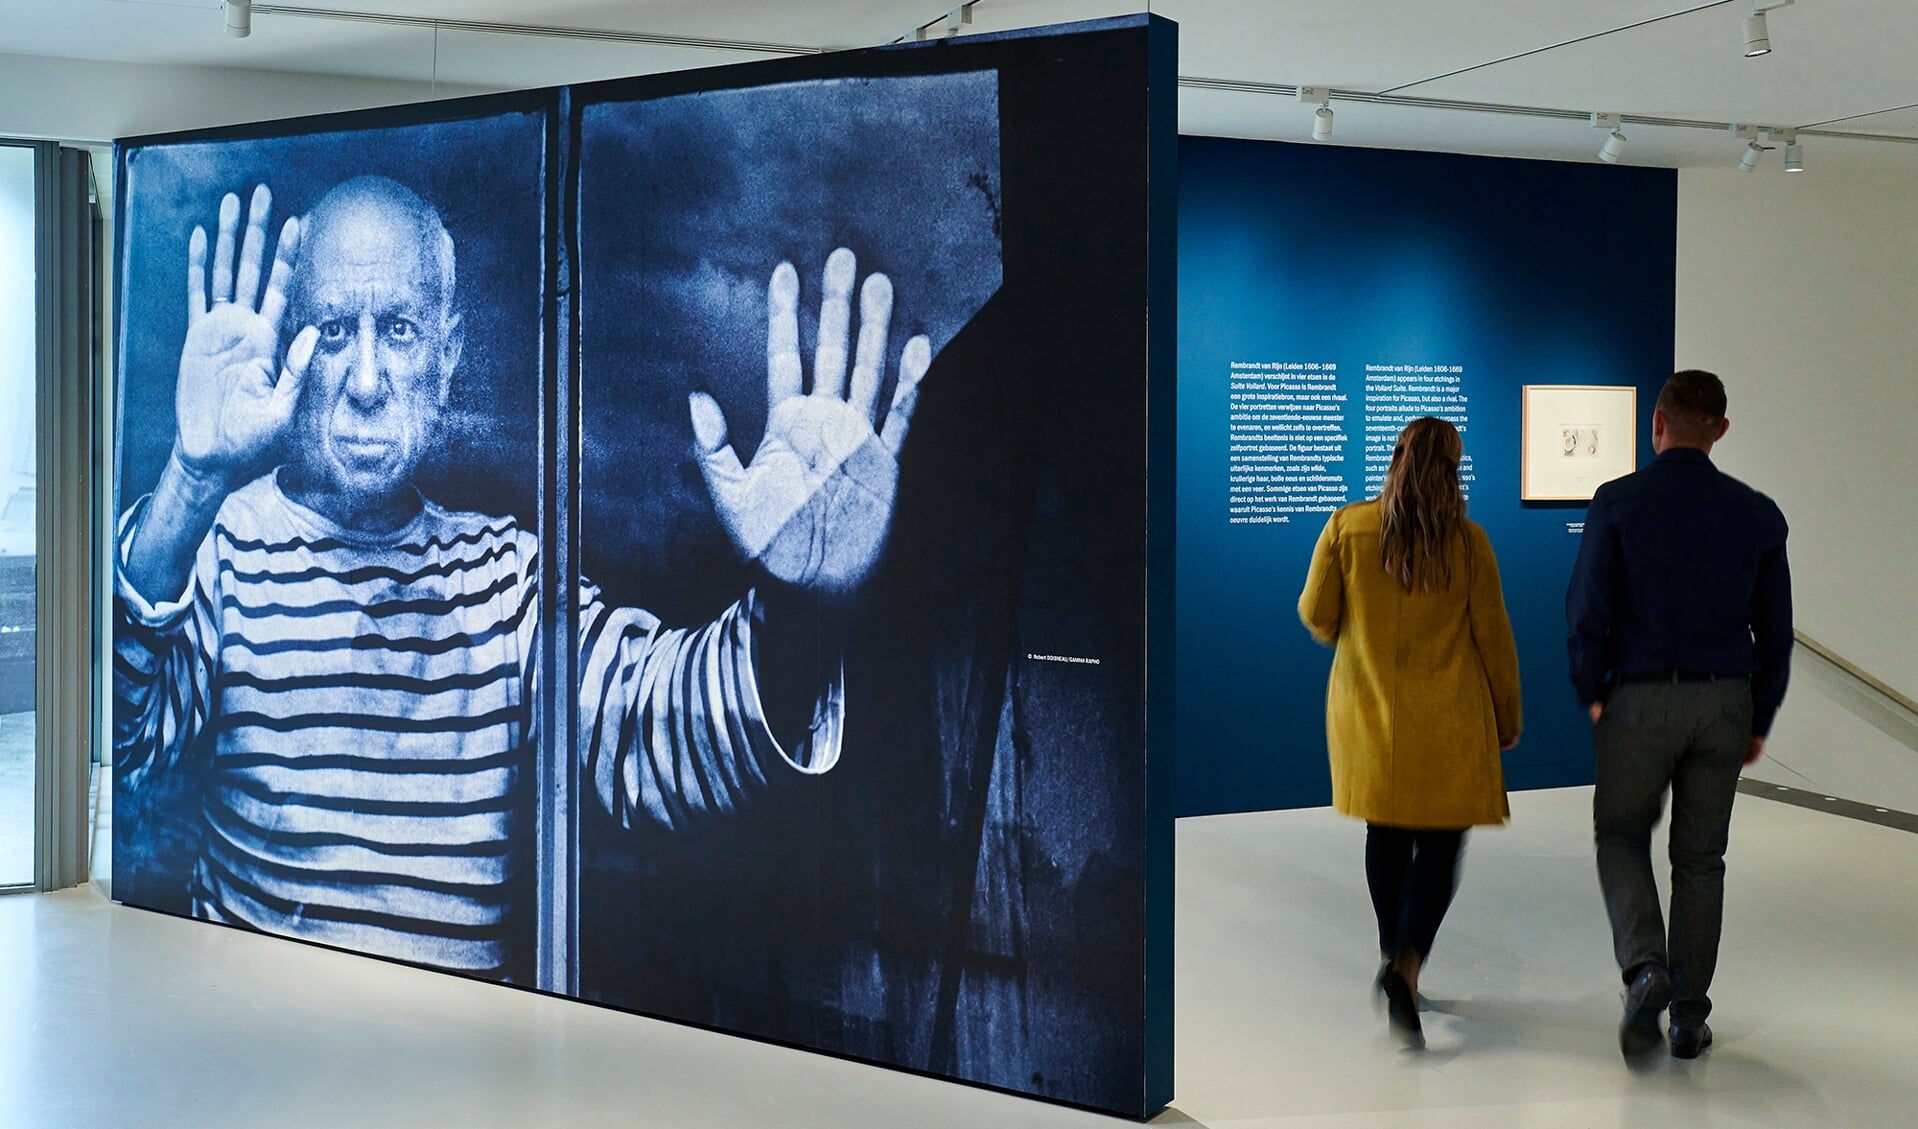 Het Noordbrabants Museum presenteert de tentoonstelling 'Picasso's Suite Vollard - De man, de muze, de mythe'. Deze geeft een interessante inkijk in Picasso's creatieve denkwereld. 